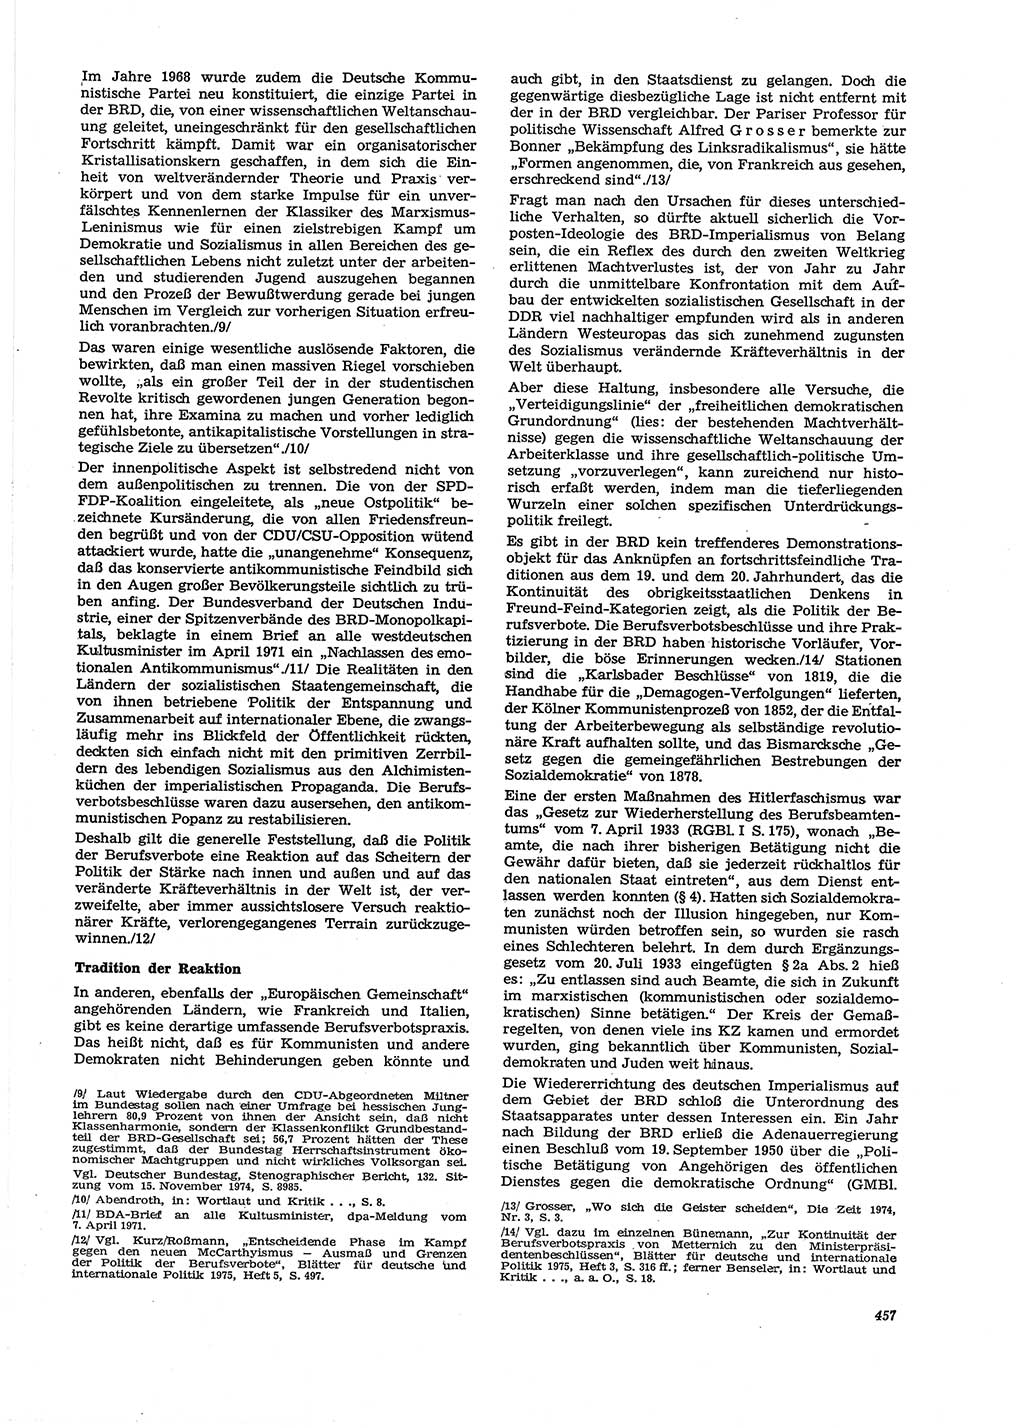 Neue Justiz (NJ), Zeitschrift für Recht und Rechtswissenschaft [Deutsche Demokratische Republik (DDR)], 29. Jahrgang 1975, Seite 457 (NJ DDR 1975, S. 457)